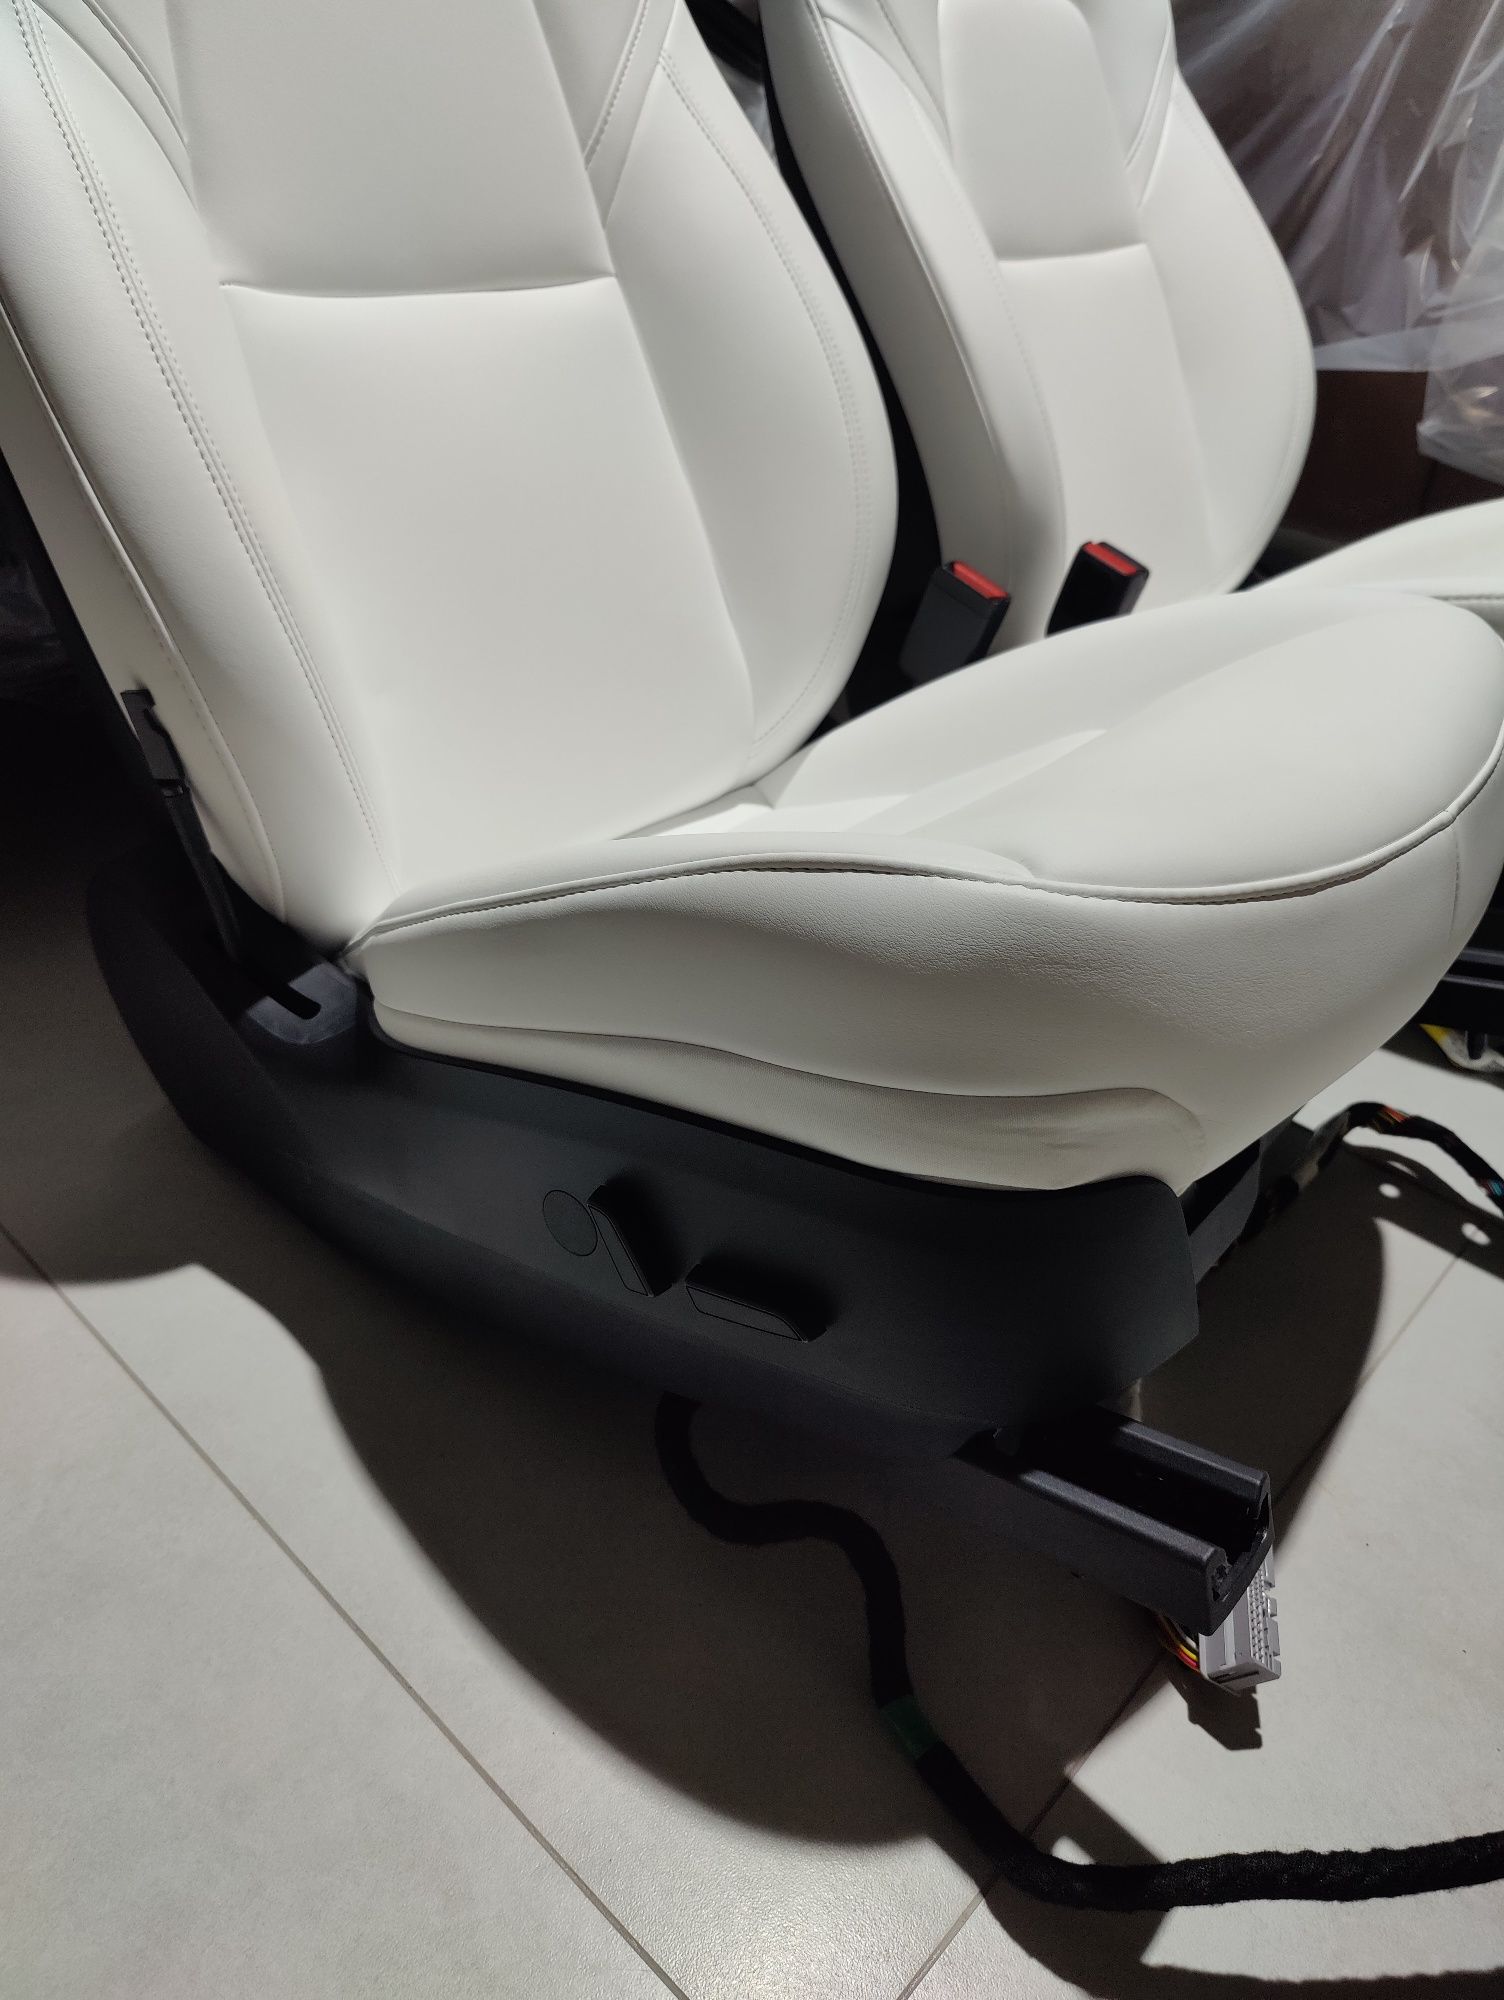 Салон Model Y 2022 білого кольору, ідеальний стан (сидіння, диван)